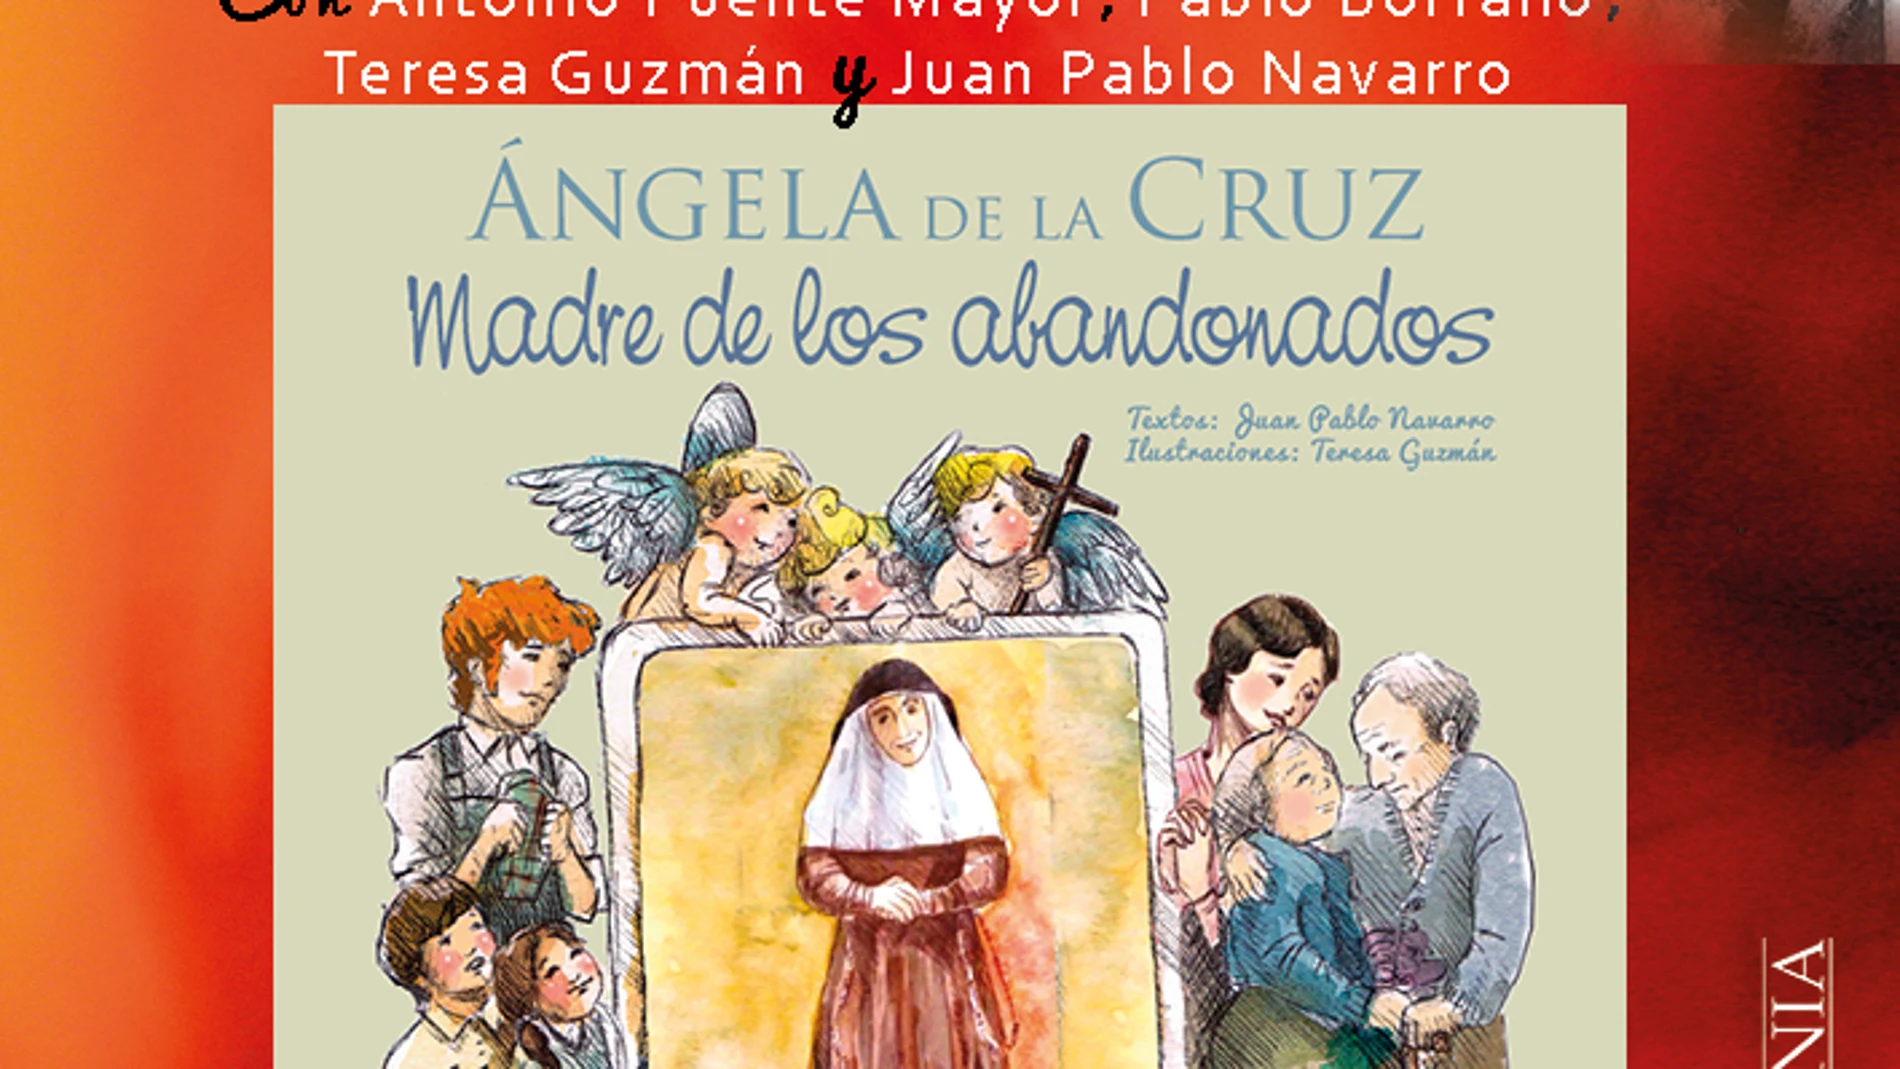 Libro "Ángela de la Cruz, madre de los abandonados"